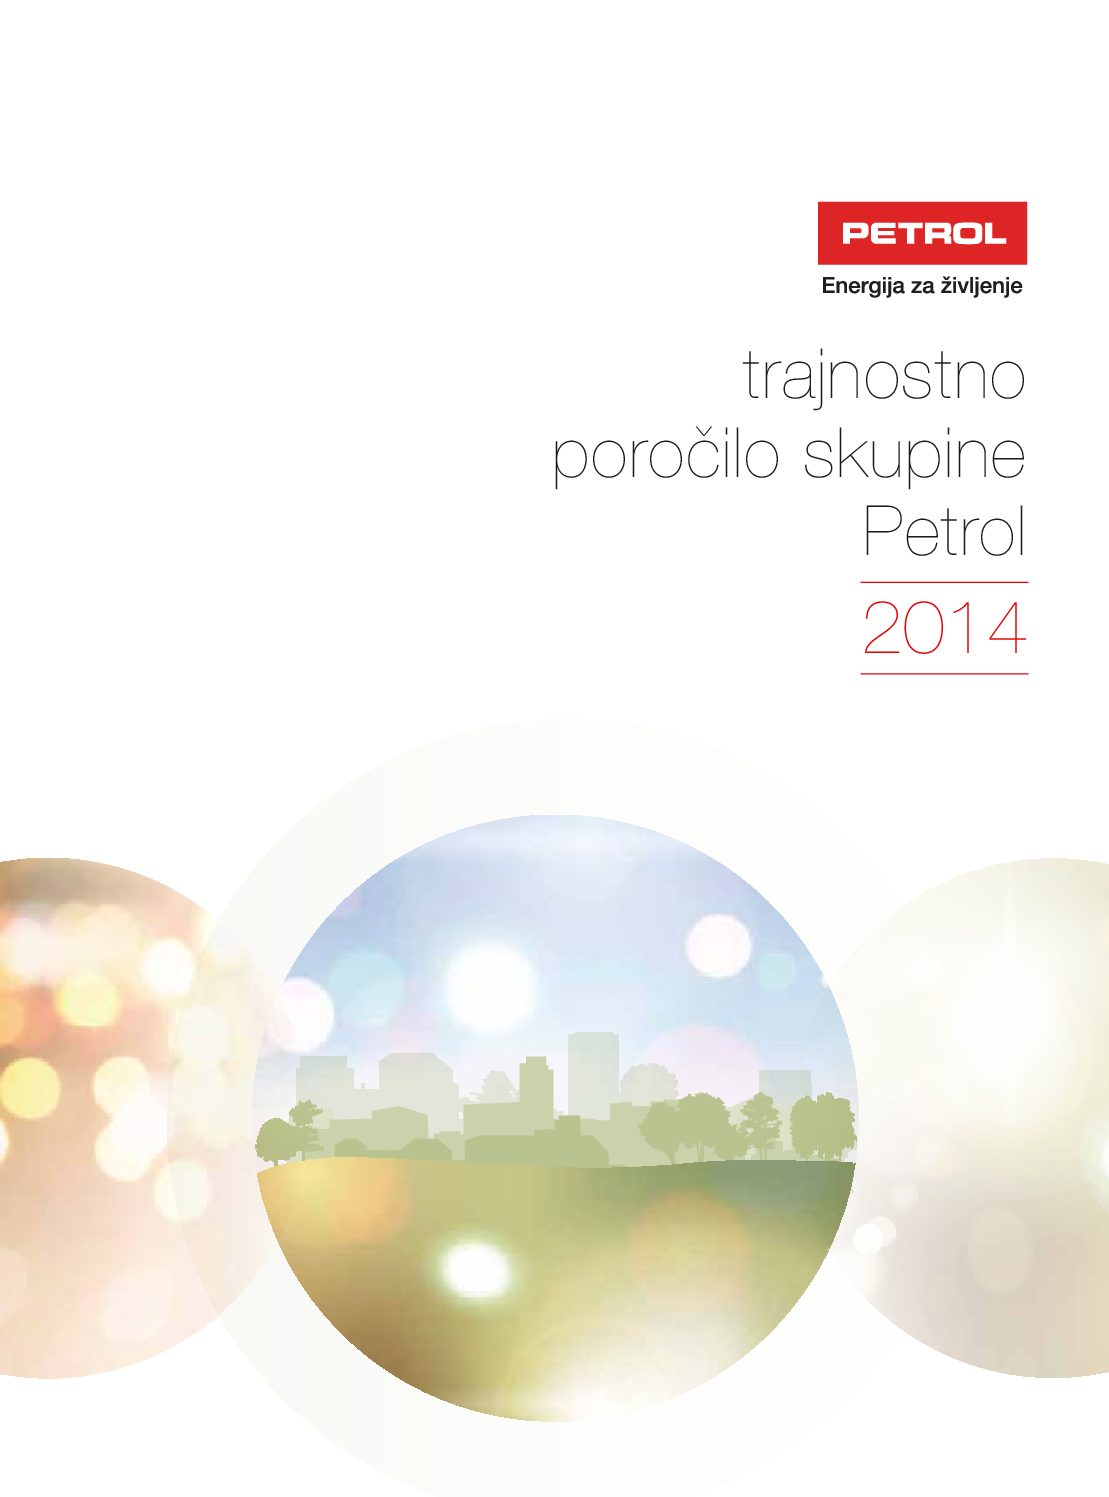 Trajnostno porocilo skupine Petrol 2014 pdf